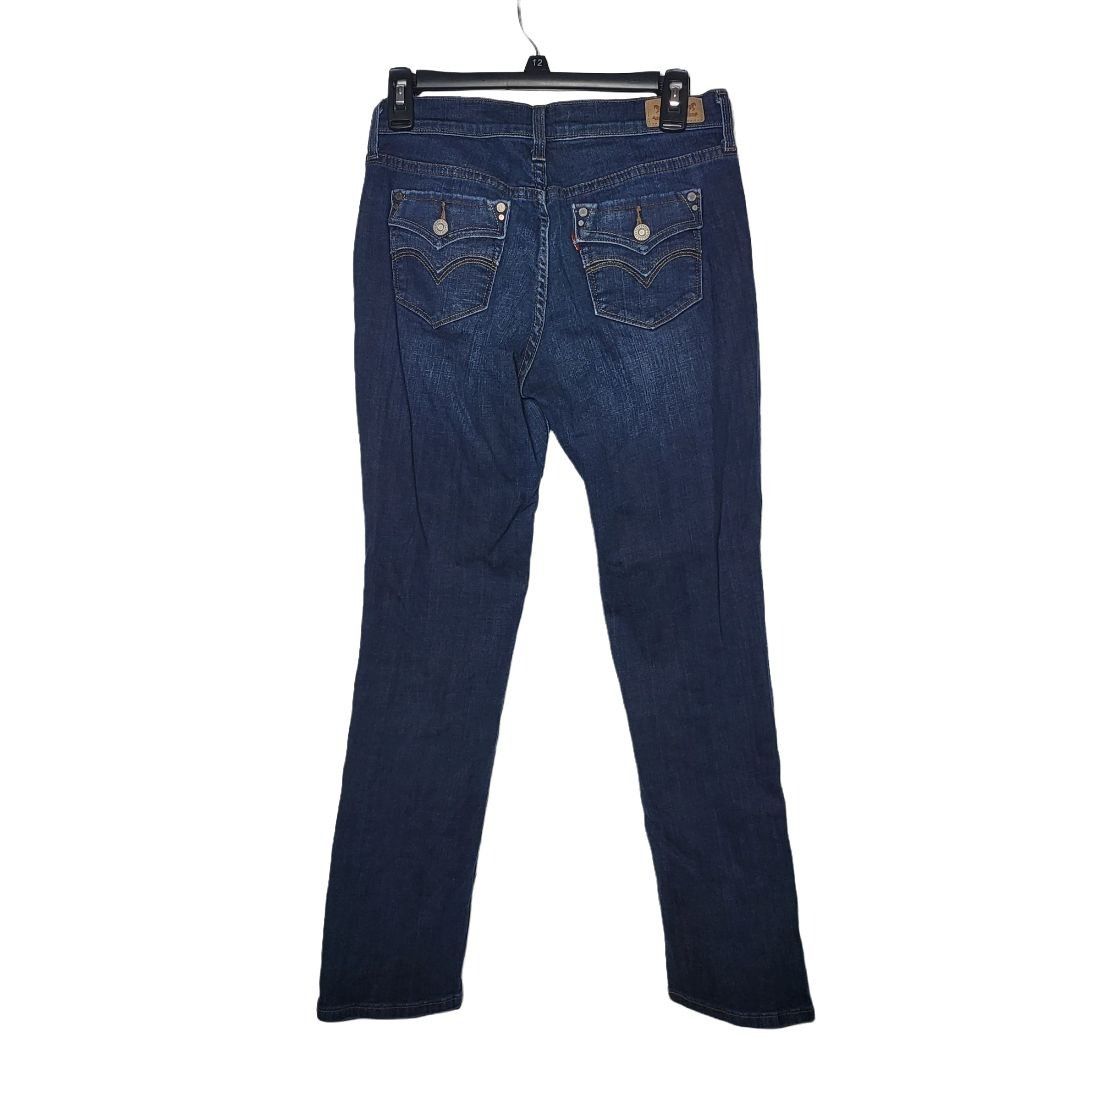 Levi's Levi's 505 Straight Leg Denim Blue Jeans Women's Size 27/30 Size 27" / US 4 / IT 40 - 2 Preview